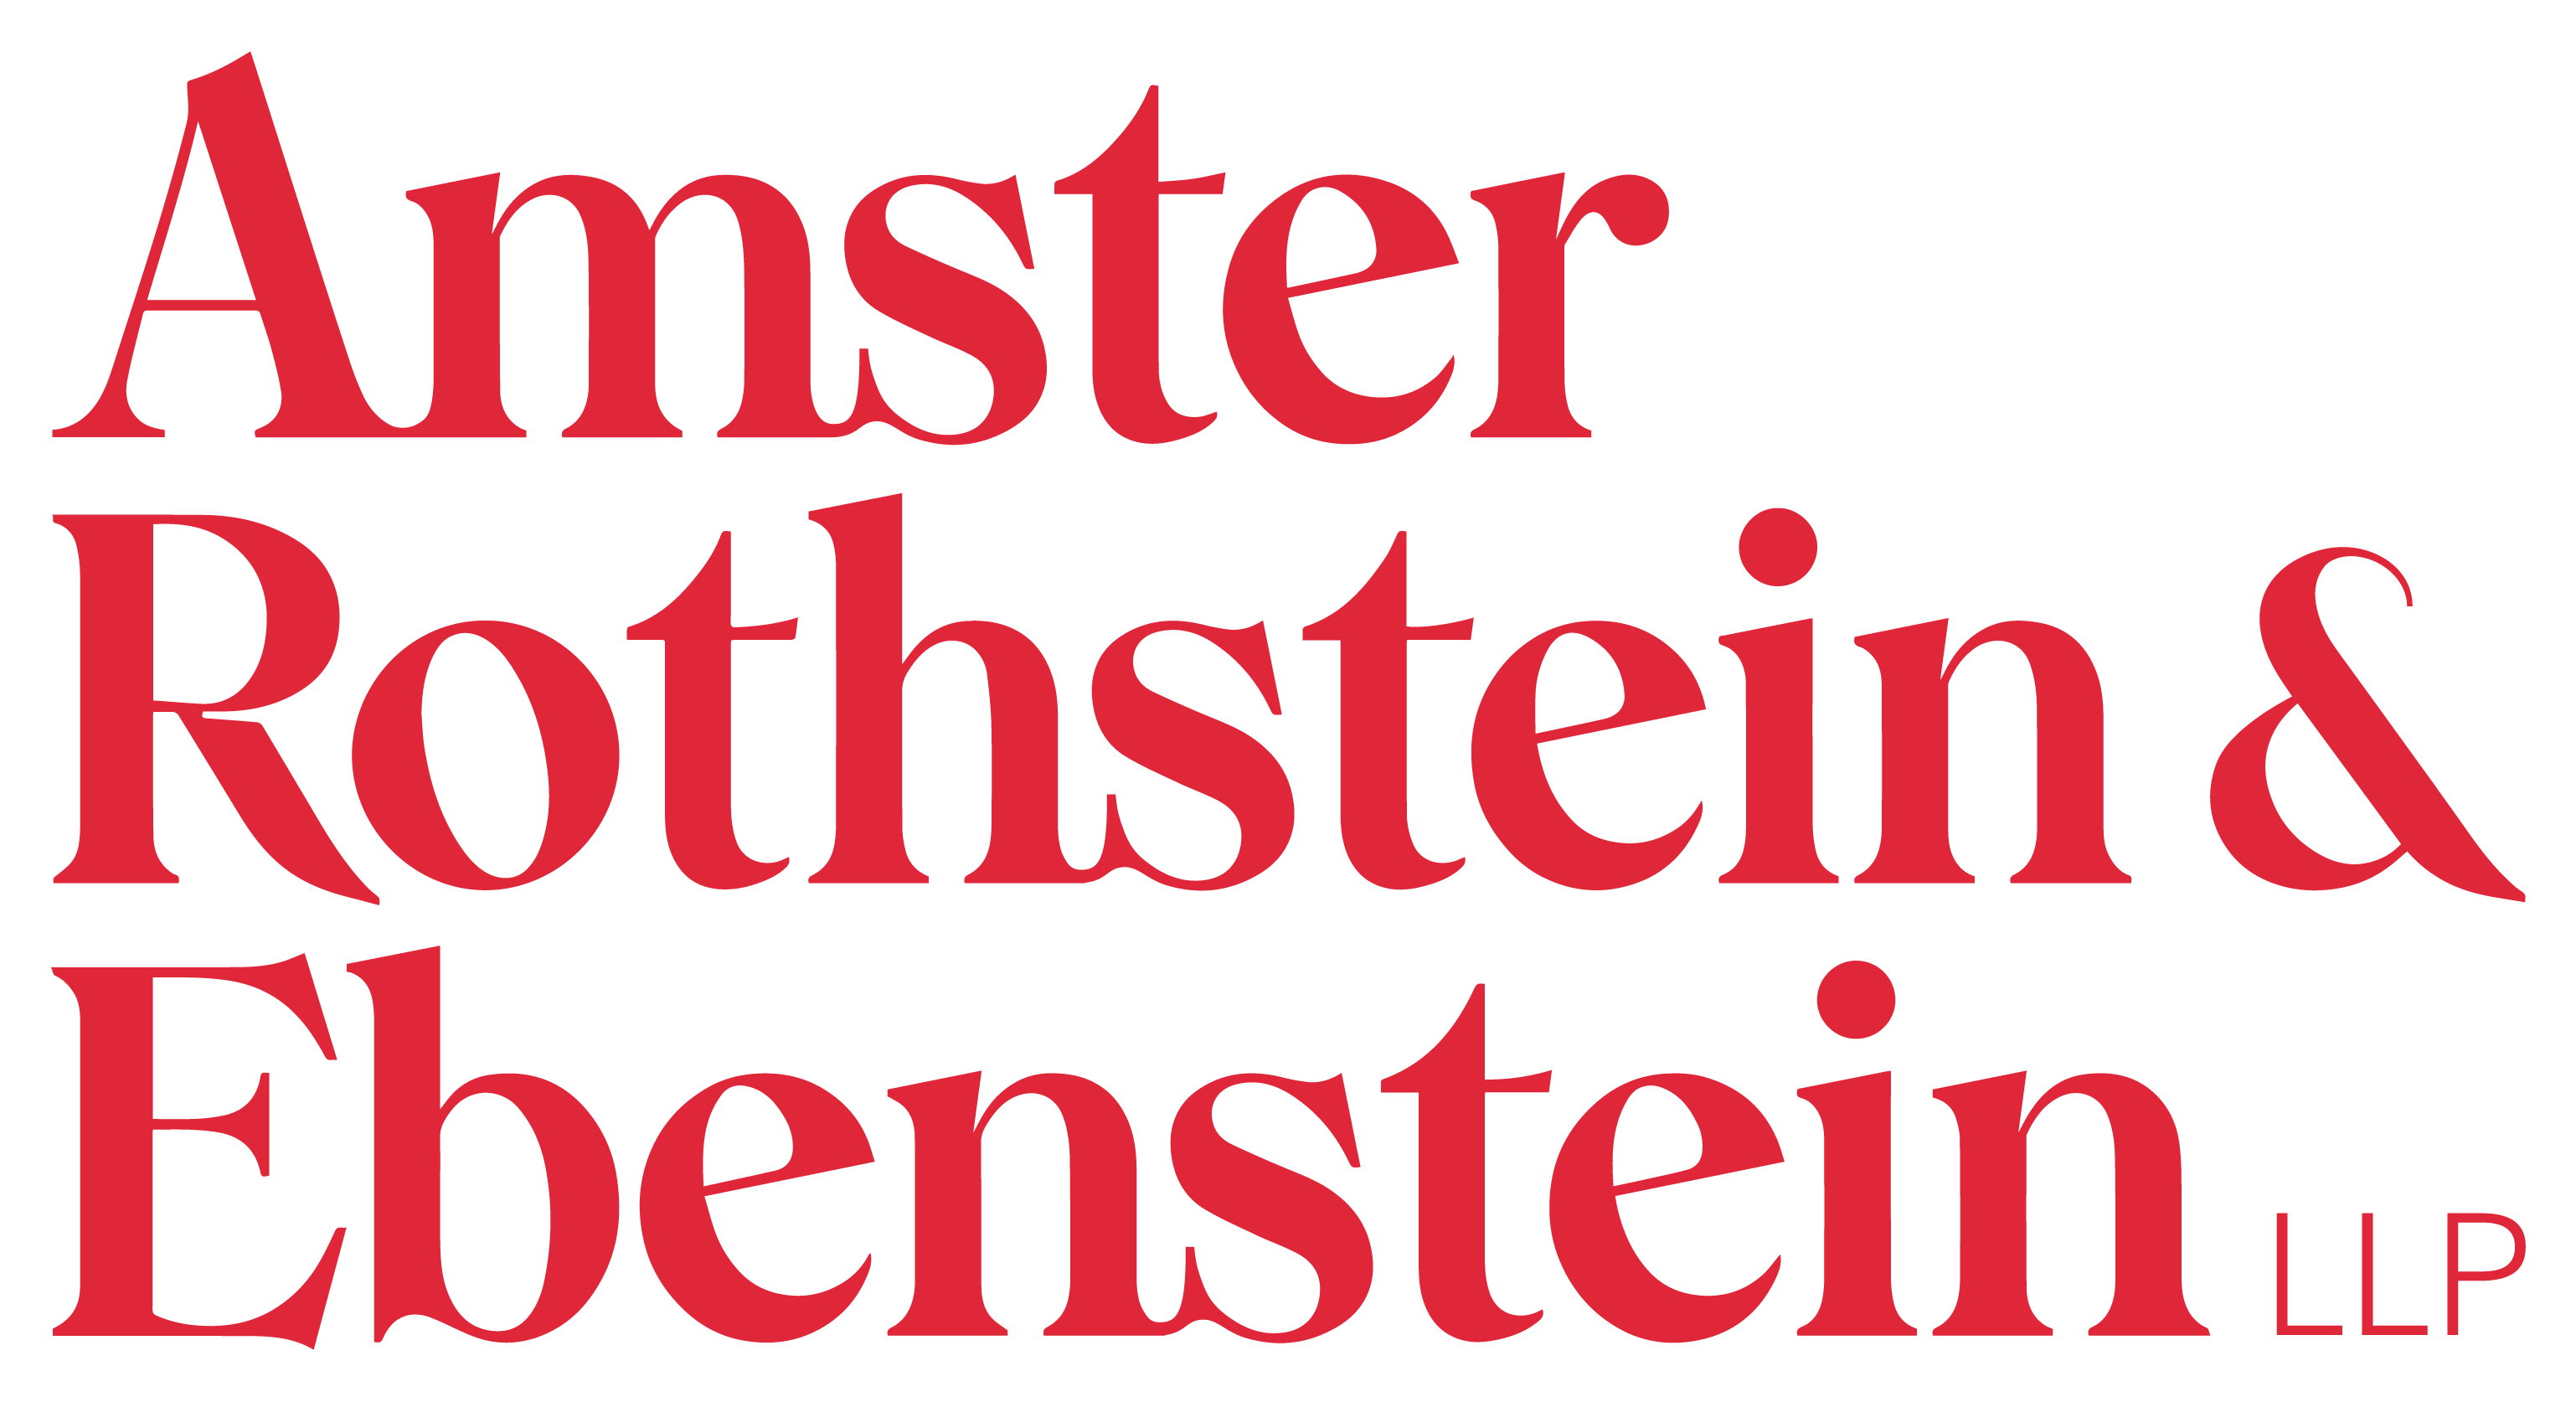 Amster, Rothstein & Ebenstein